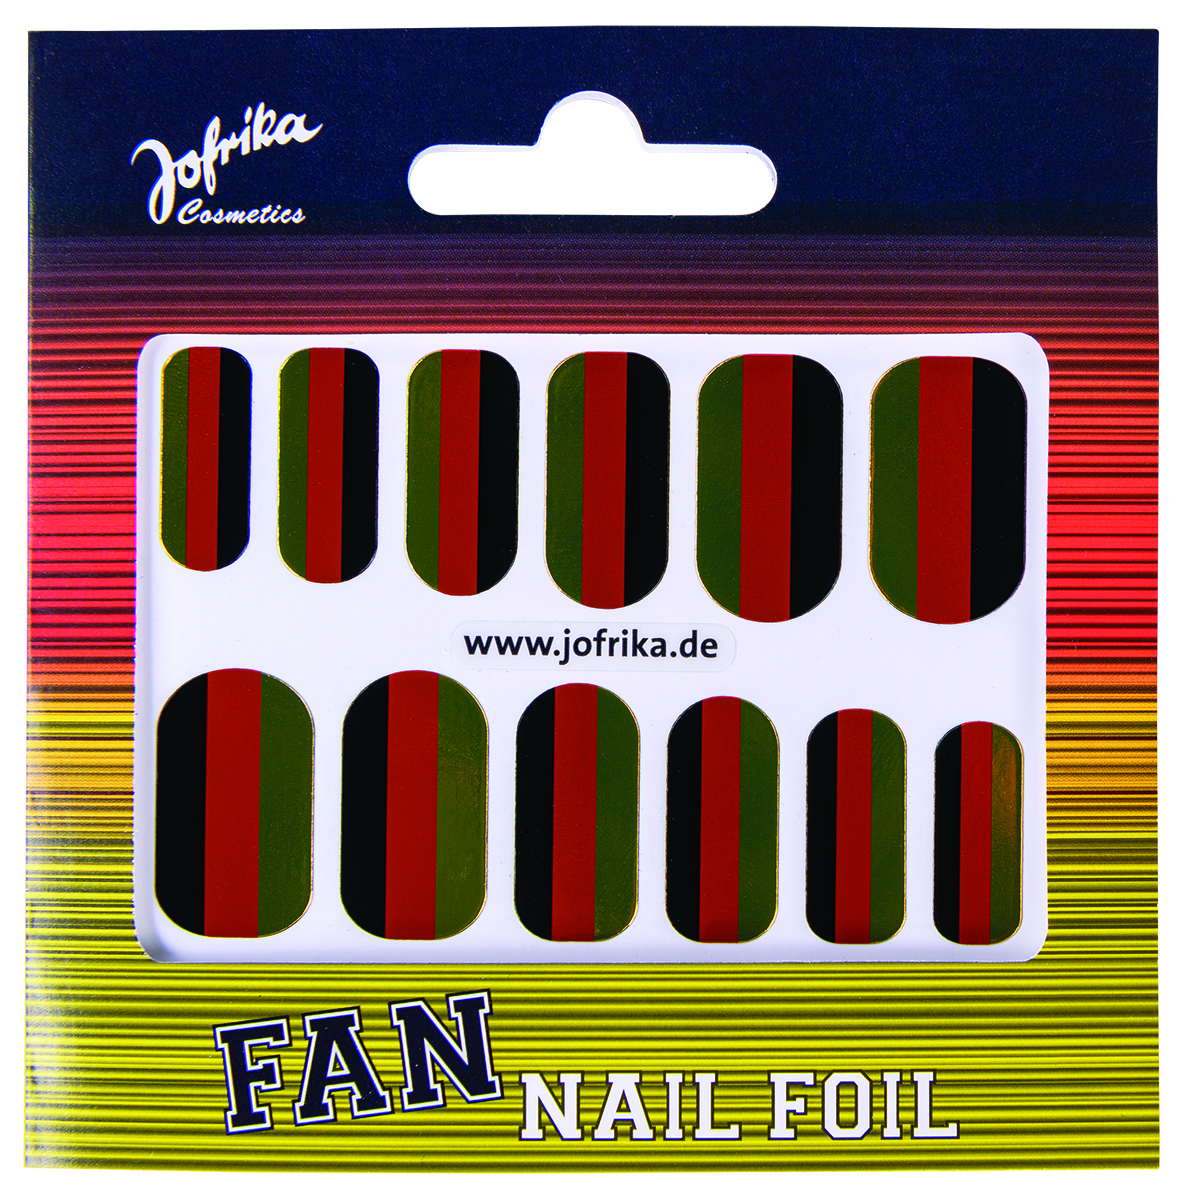 Jofrika Cosmetics 716856 - Fan Nail Foil, Nagelfolie, Fan Nägel Schwarz Rot Gold WM EM